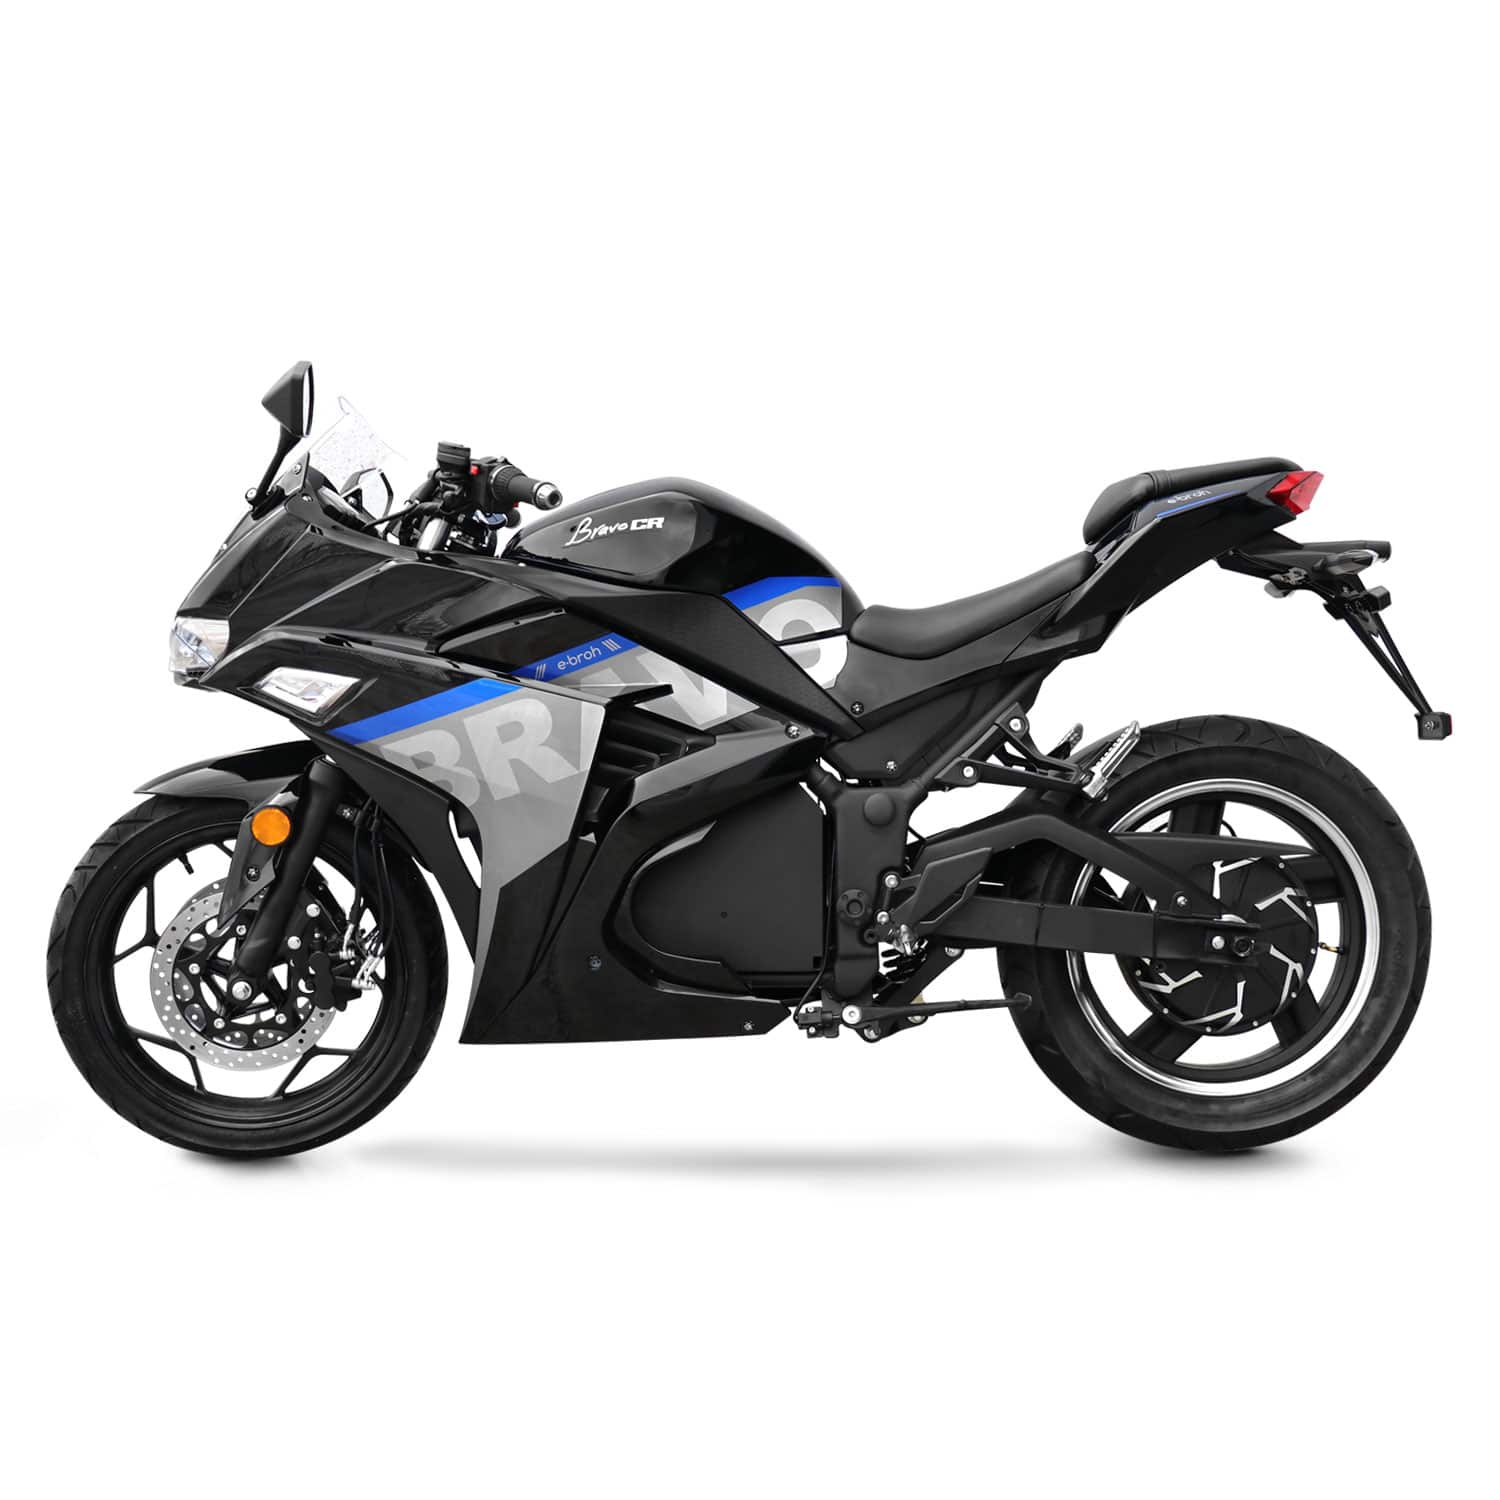 Moto électrique, EBROH CR | 5000 W | 125 cc | V-max 115 km/h | Autonomie 100 km - Atom Motors